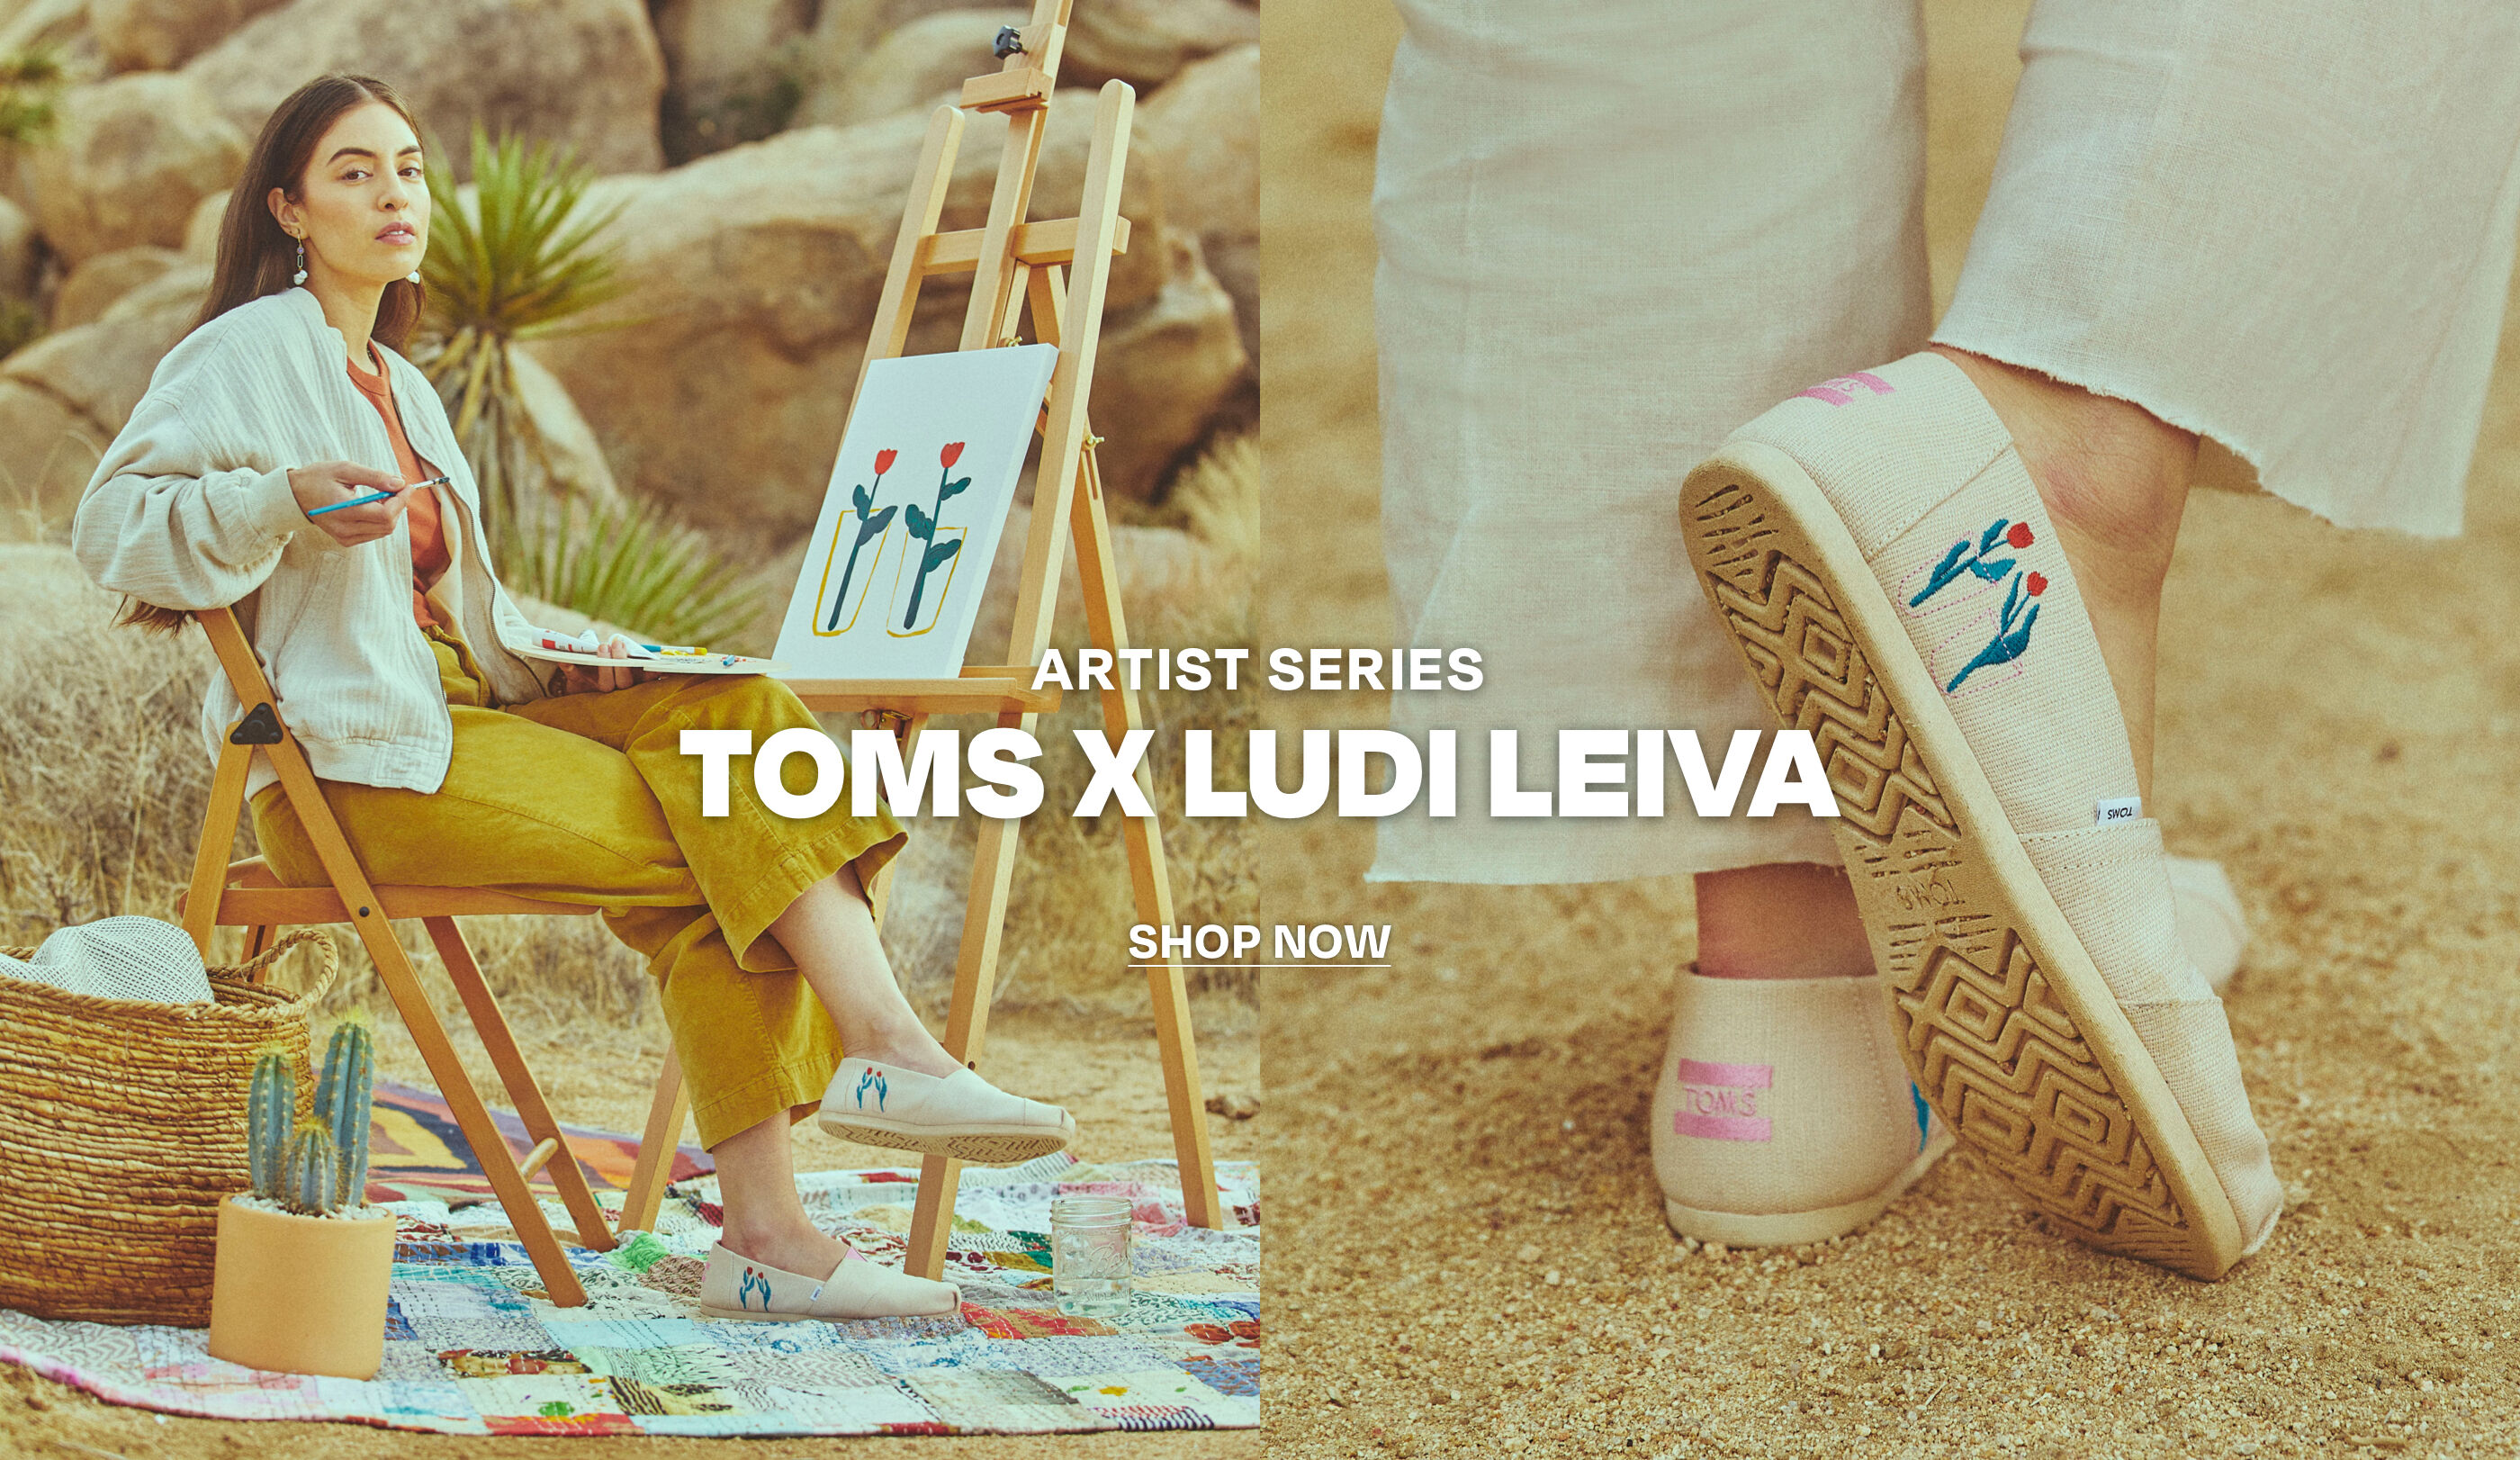 TOMS x Ludi Leiva